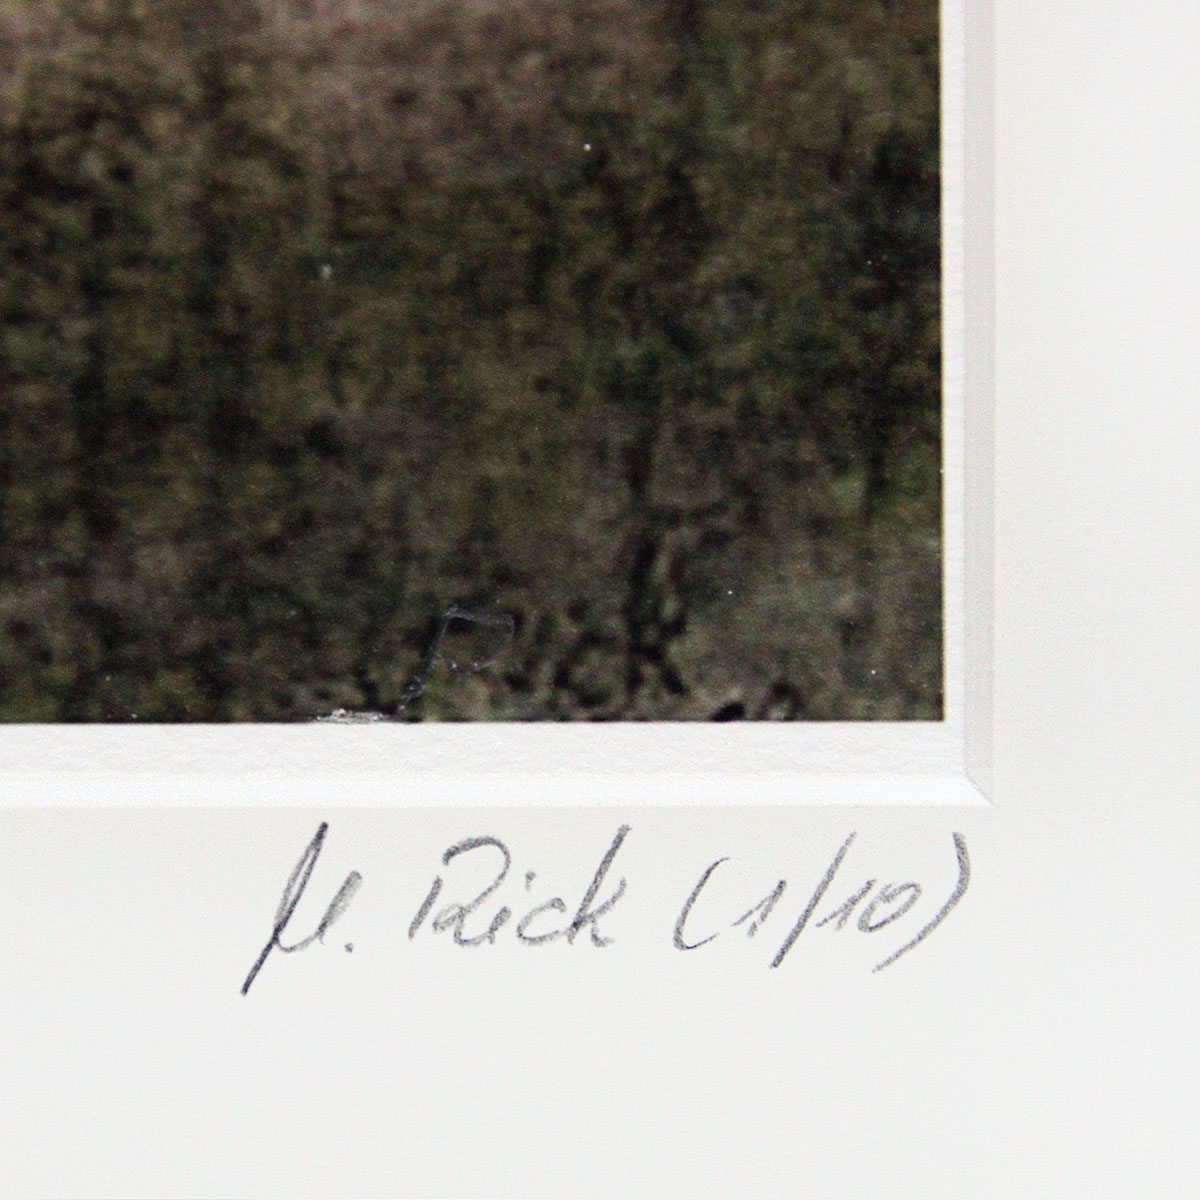 M. Rick: "Landscape braun", Edition, signierter Druck